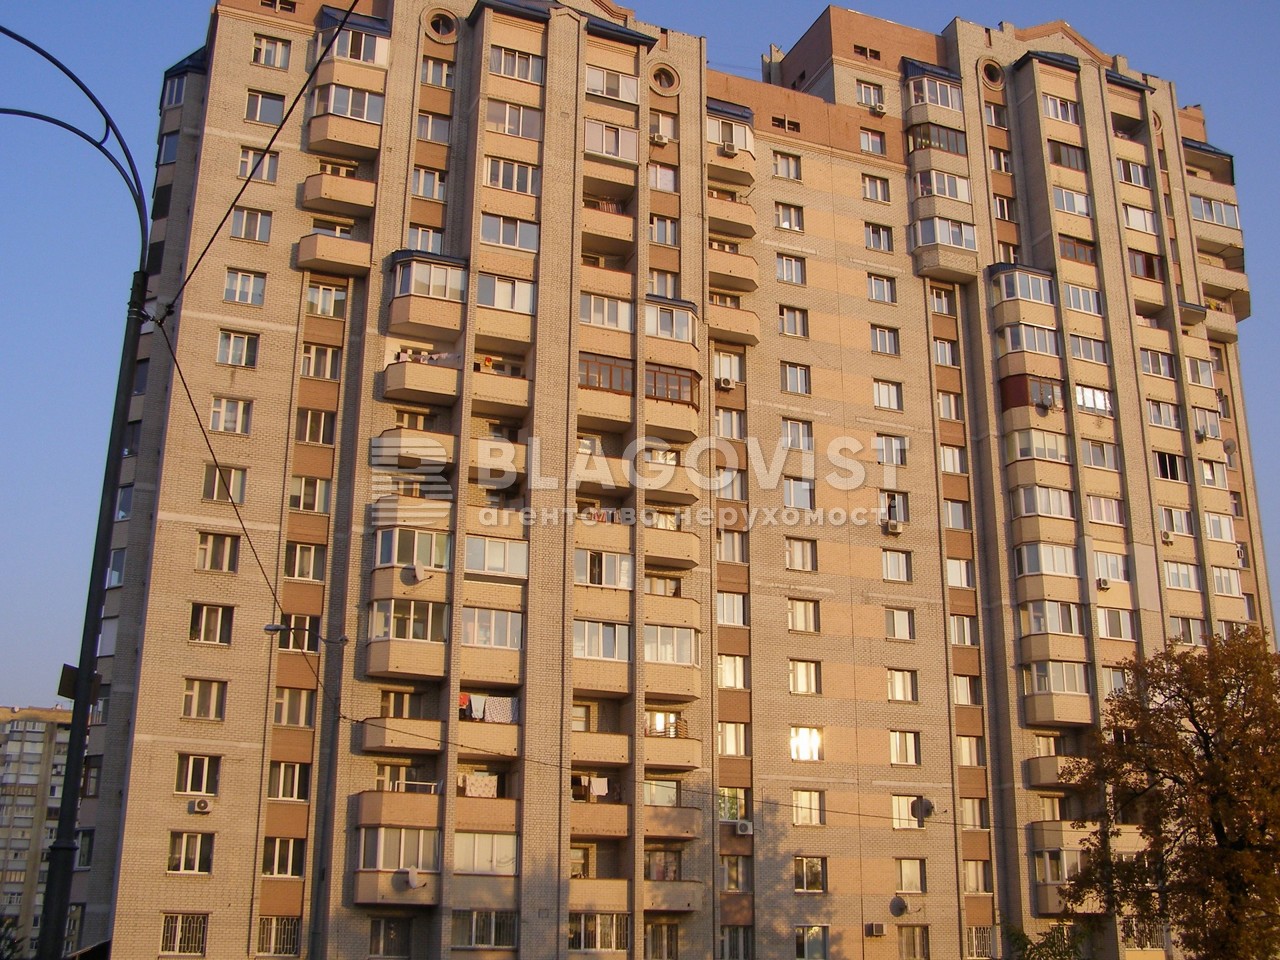 Квартира P-30261, Алматинская (Алма-Атинская), 41а, Киев - Фото 2